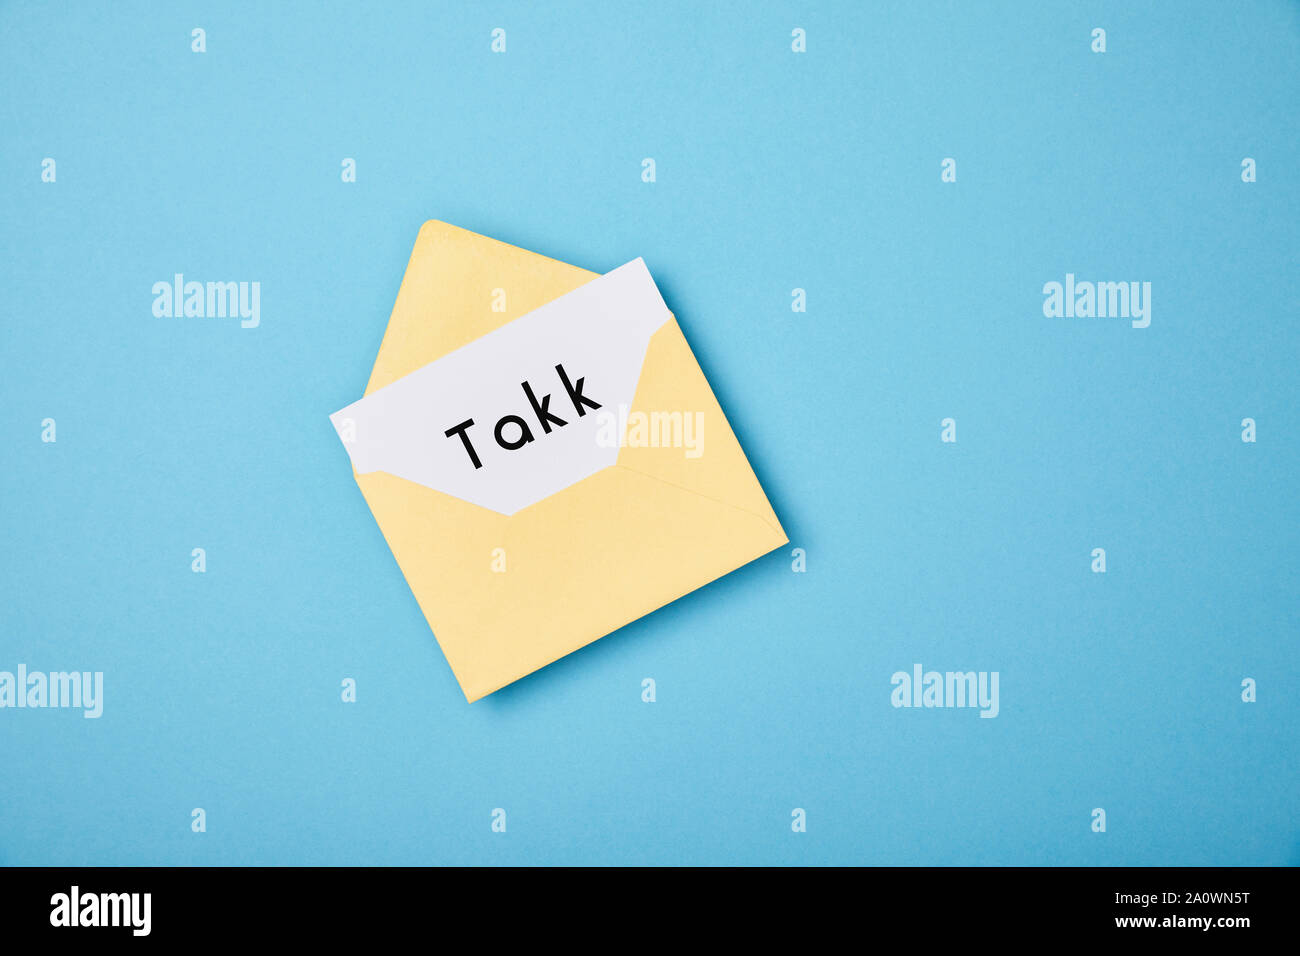 Gelber Umschlag Und Weisse Karte Mit Takk Wort Auf Blauem Hintergrund Stockfotografie Alamy